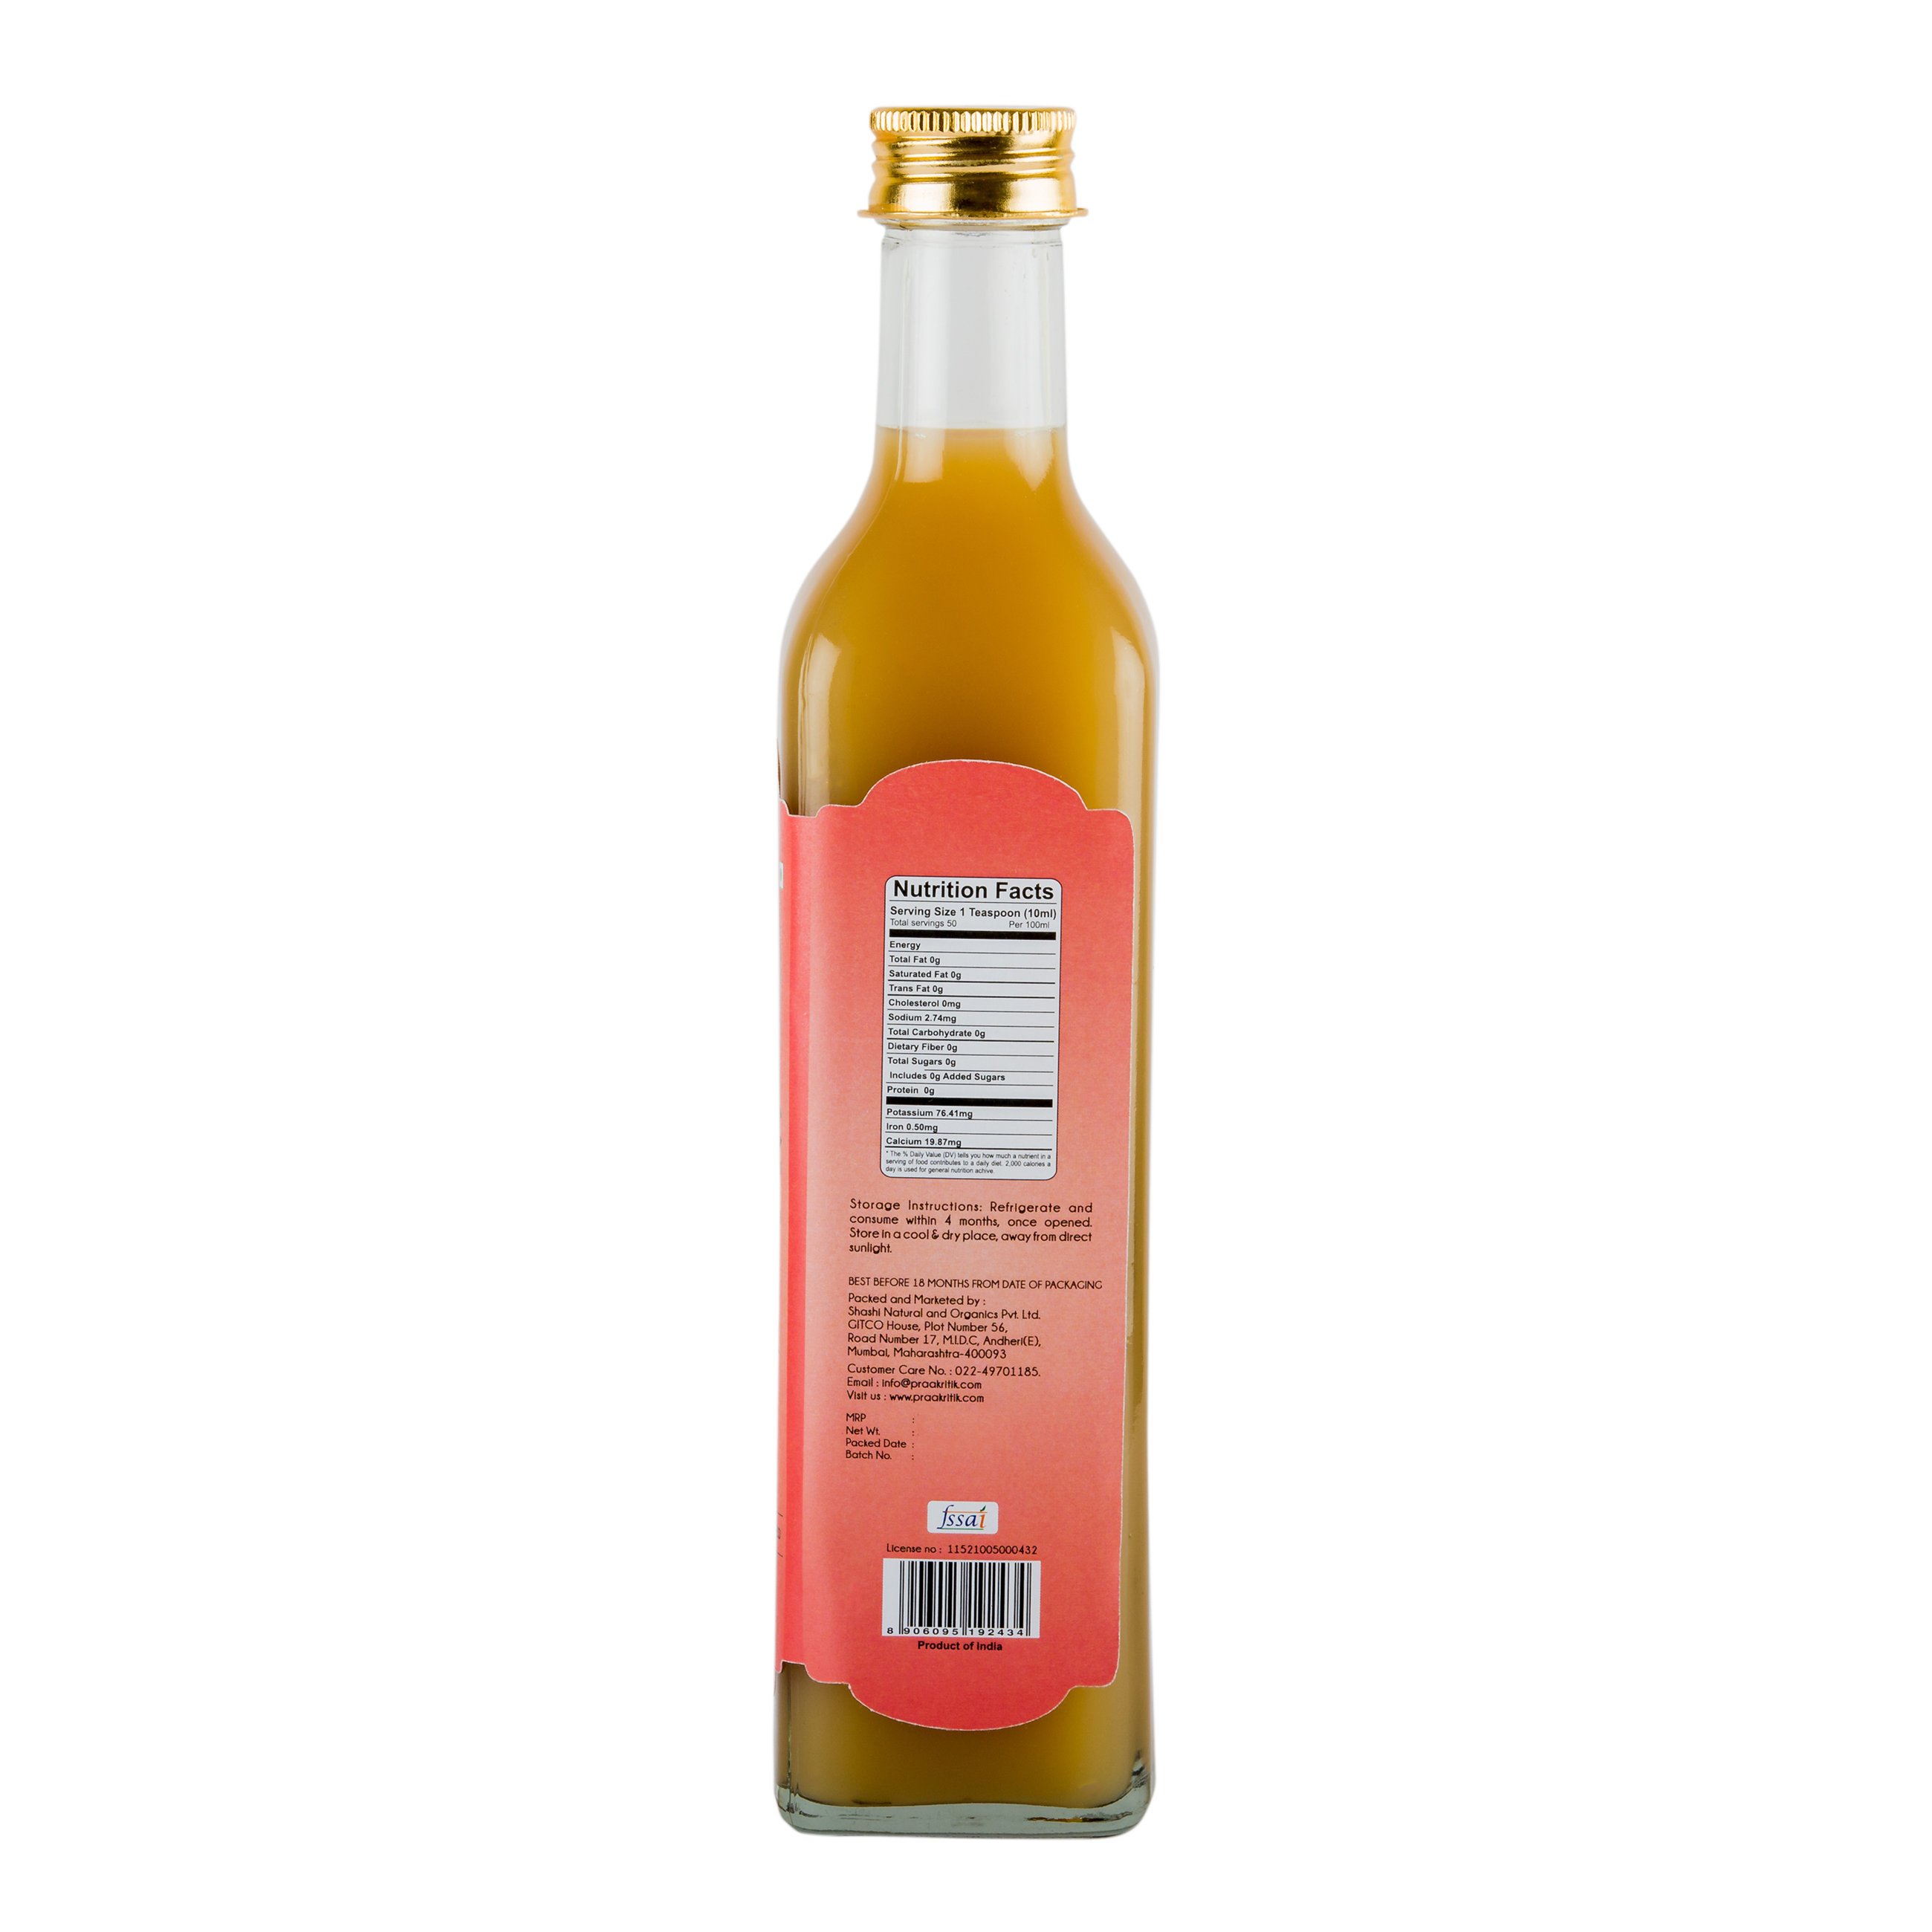 Praakritik Organic Apple Cider Vinegar Pure 500ml